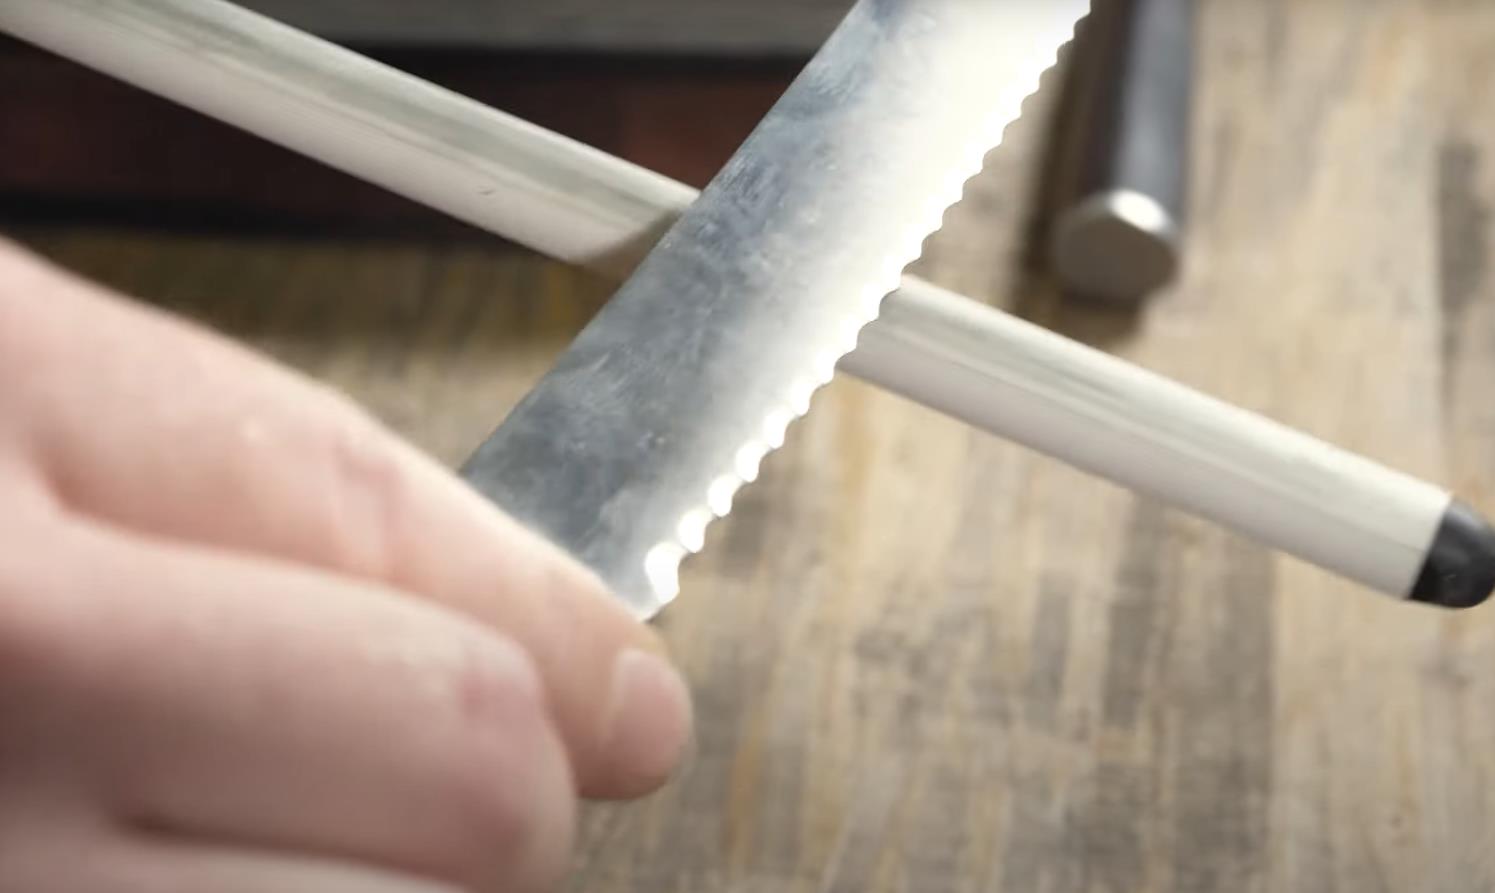 Sharpen a serrated knife